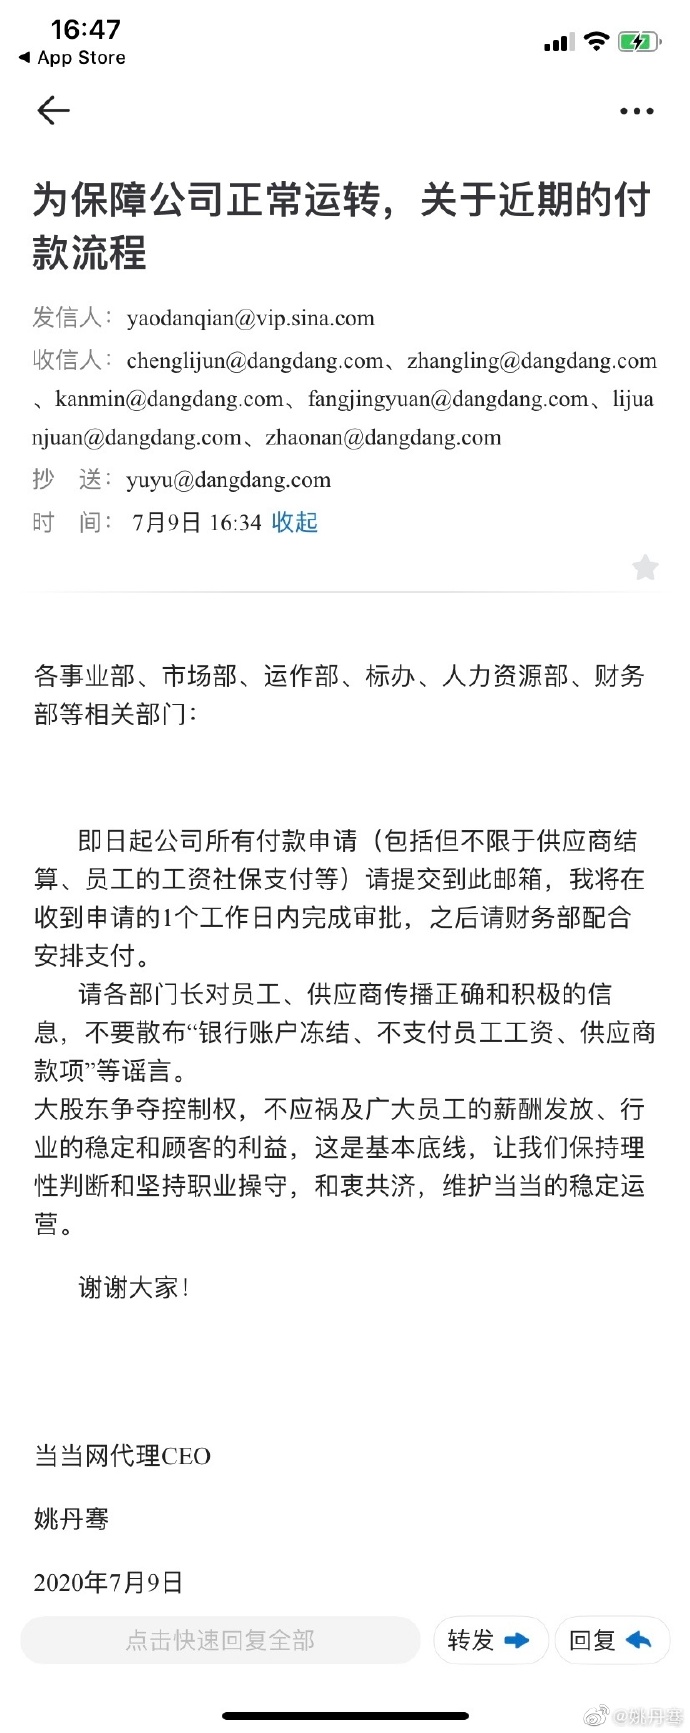 李国庆委任的"当当代理CEO"姚丹骞发声：今起付款流程本人审批，保障正常运营